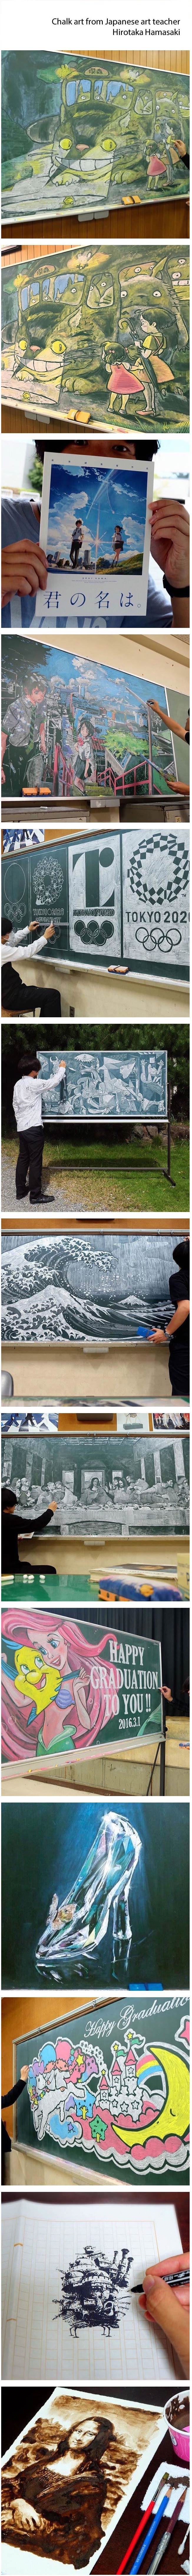 일본 교사의 그림 수준..jpg